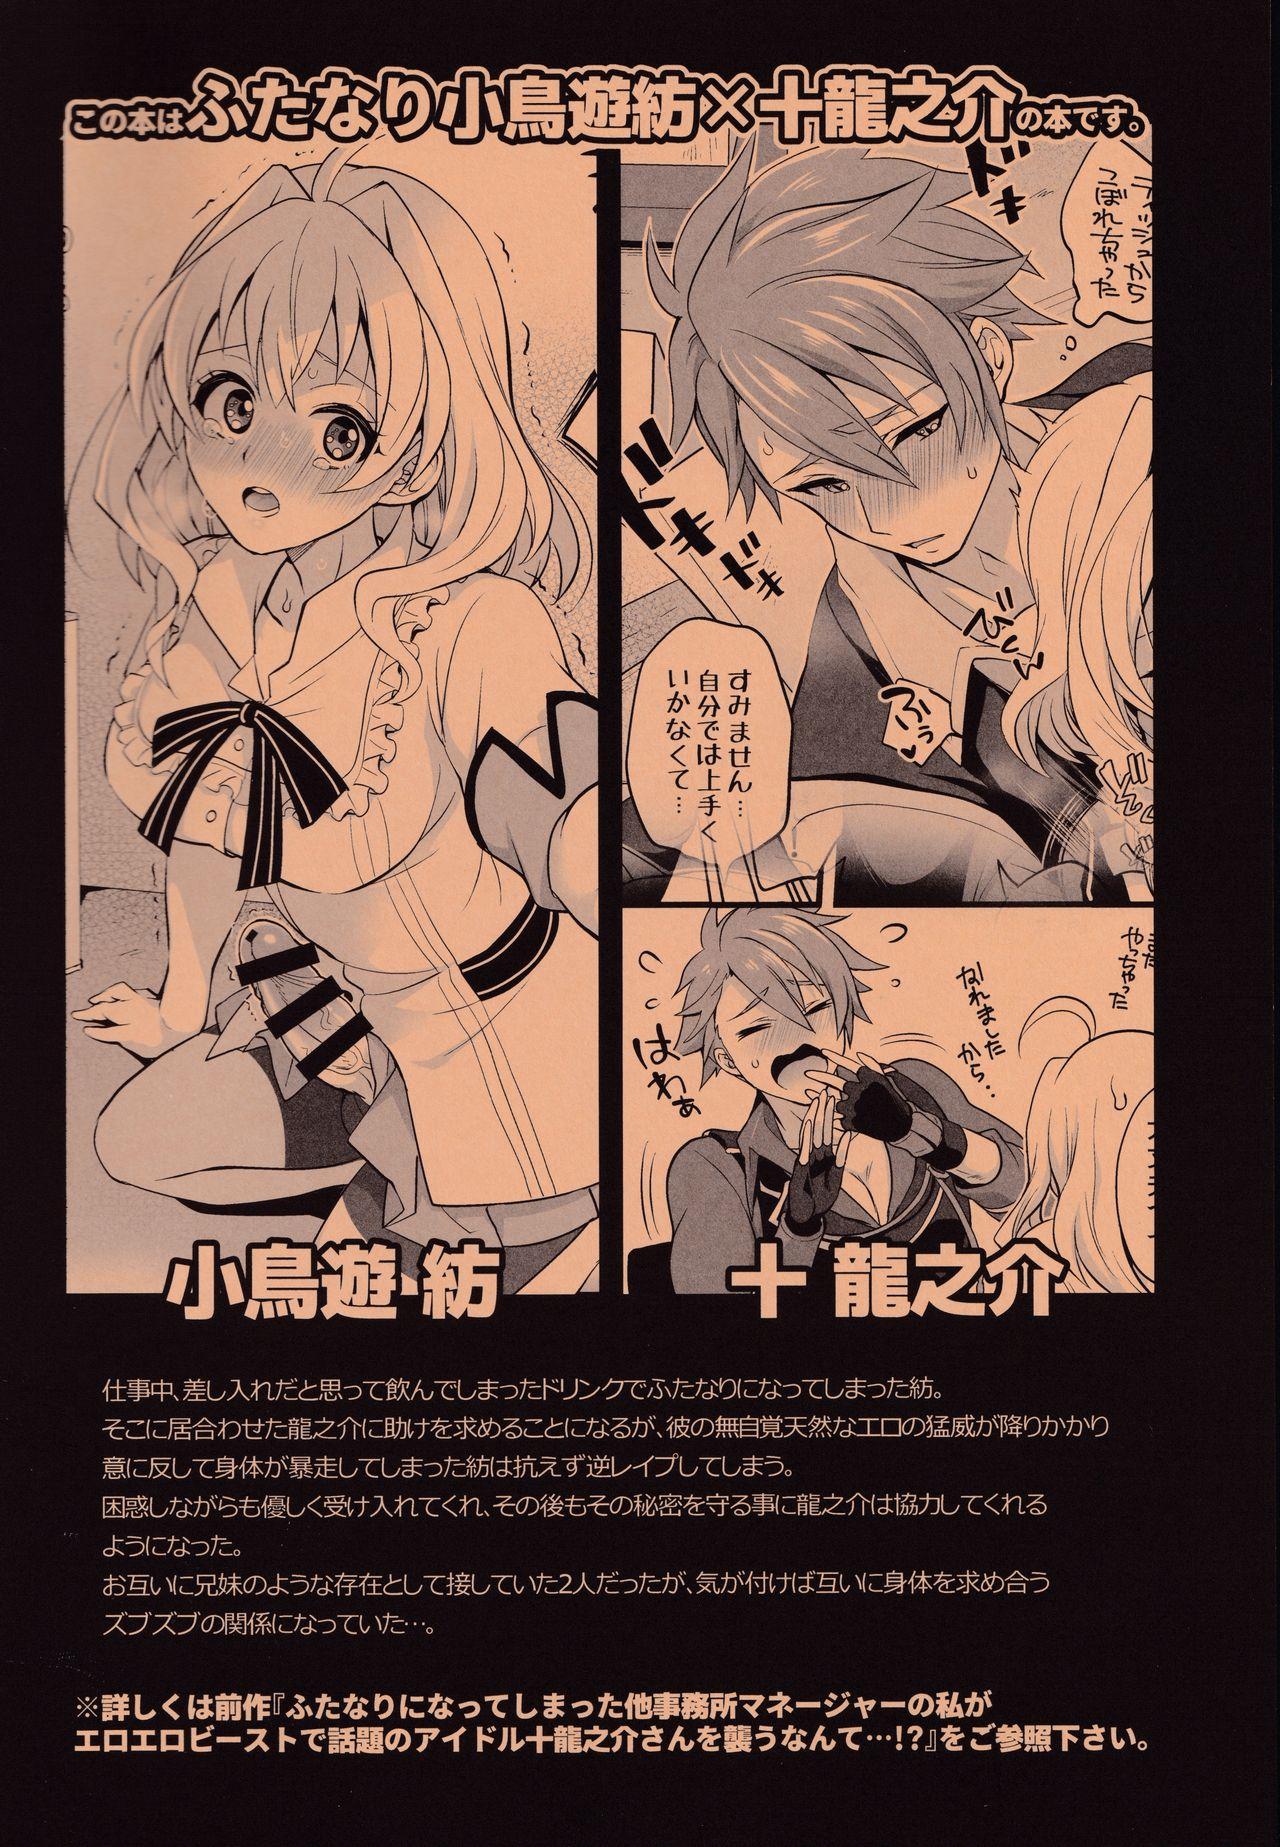 Self Watashi no Ochinchin ga Amaeta Gatterun desu! - Idolish7 Safado - Page 2